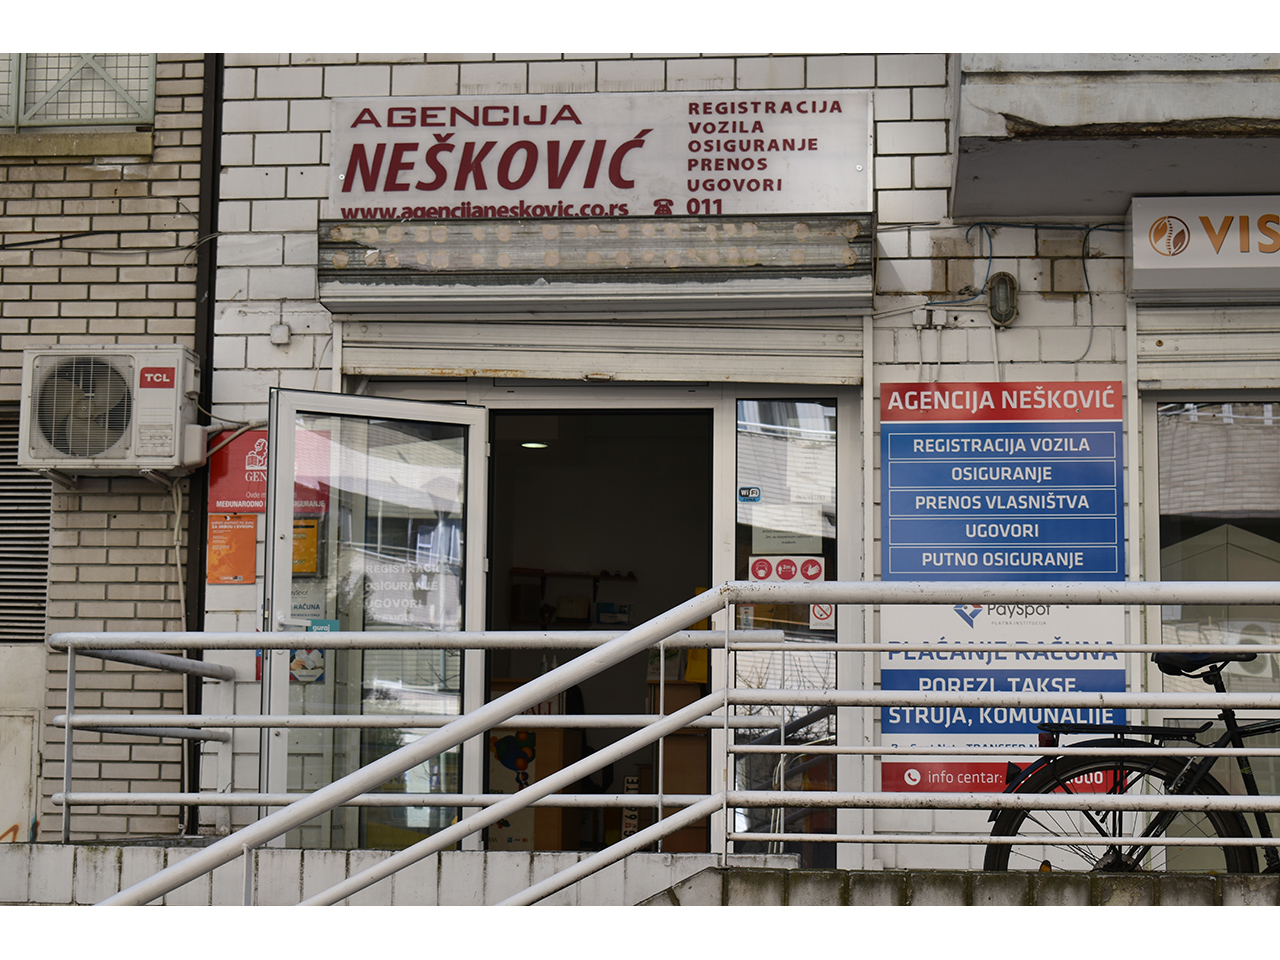 Photo 2 - AGENCY NESKOVIC Car Insurance Belgrade